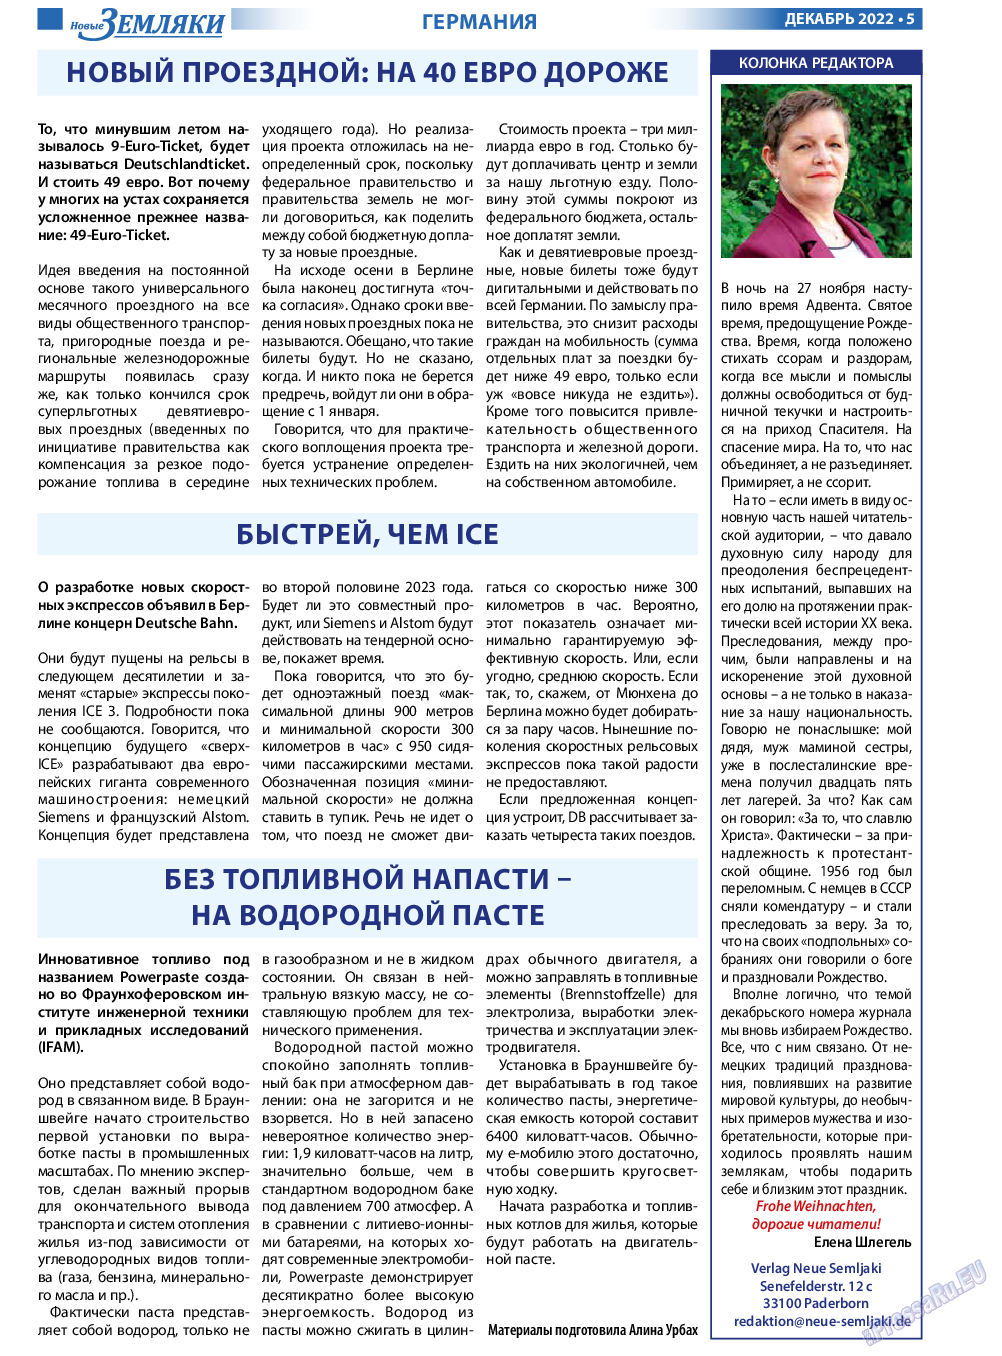 Новые Земляки, газета. 2022 №12 стр.5